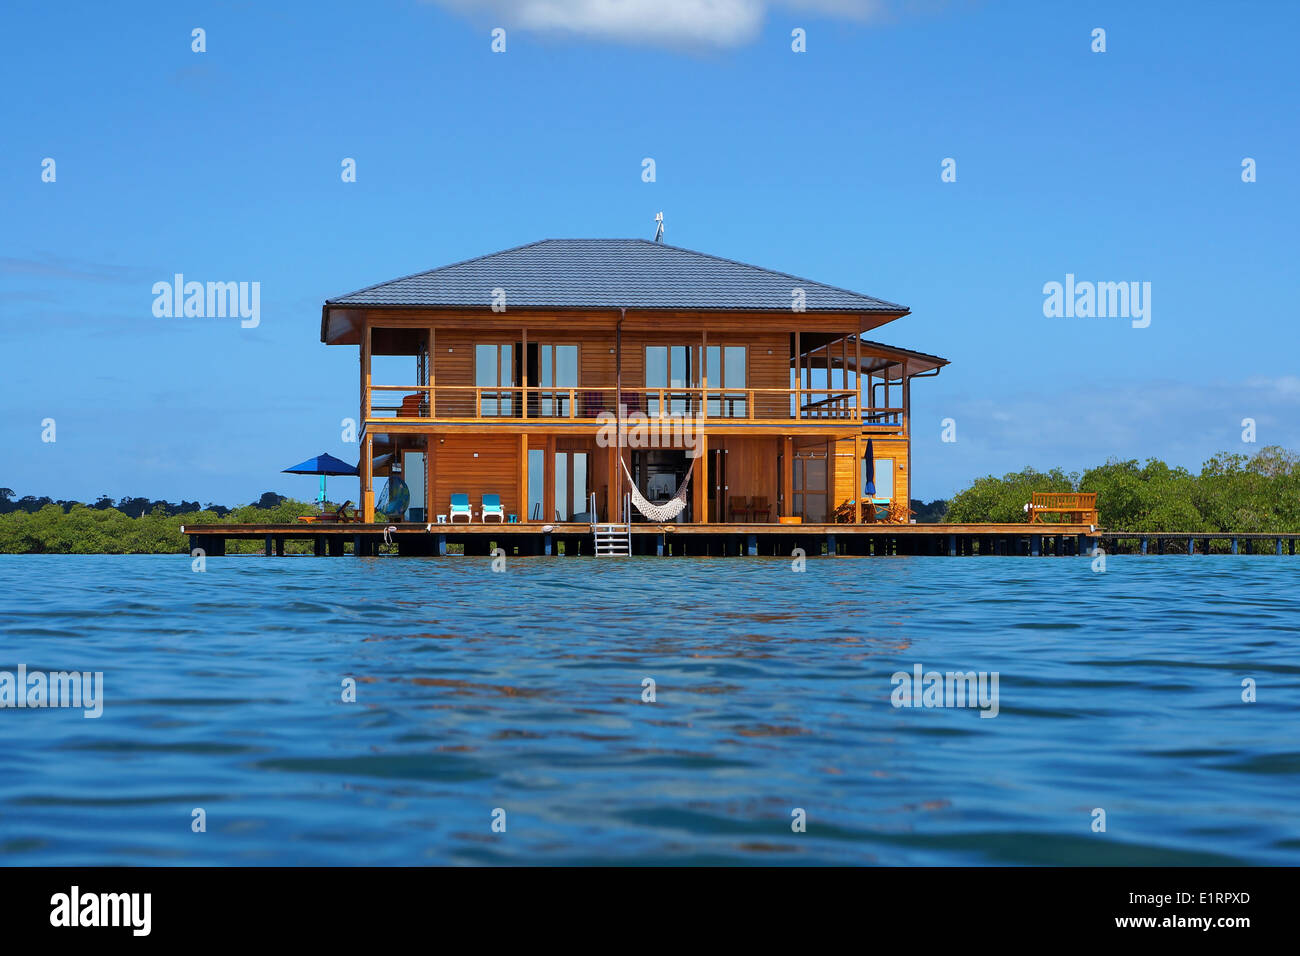 La maison tropical en bois sur pilotis au-dessus de l'eau de la mer des Caraïbes, Panama, Amérique Centrale Banque D'Images